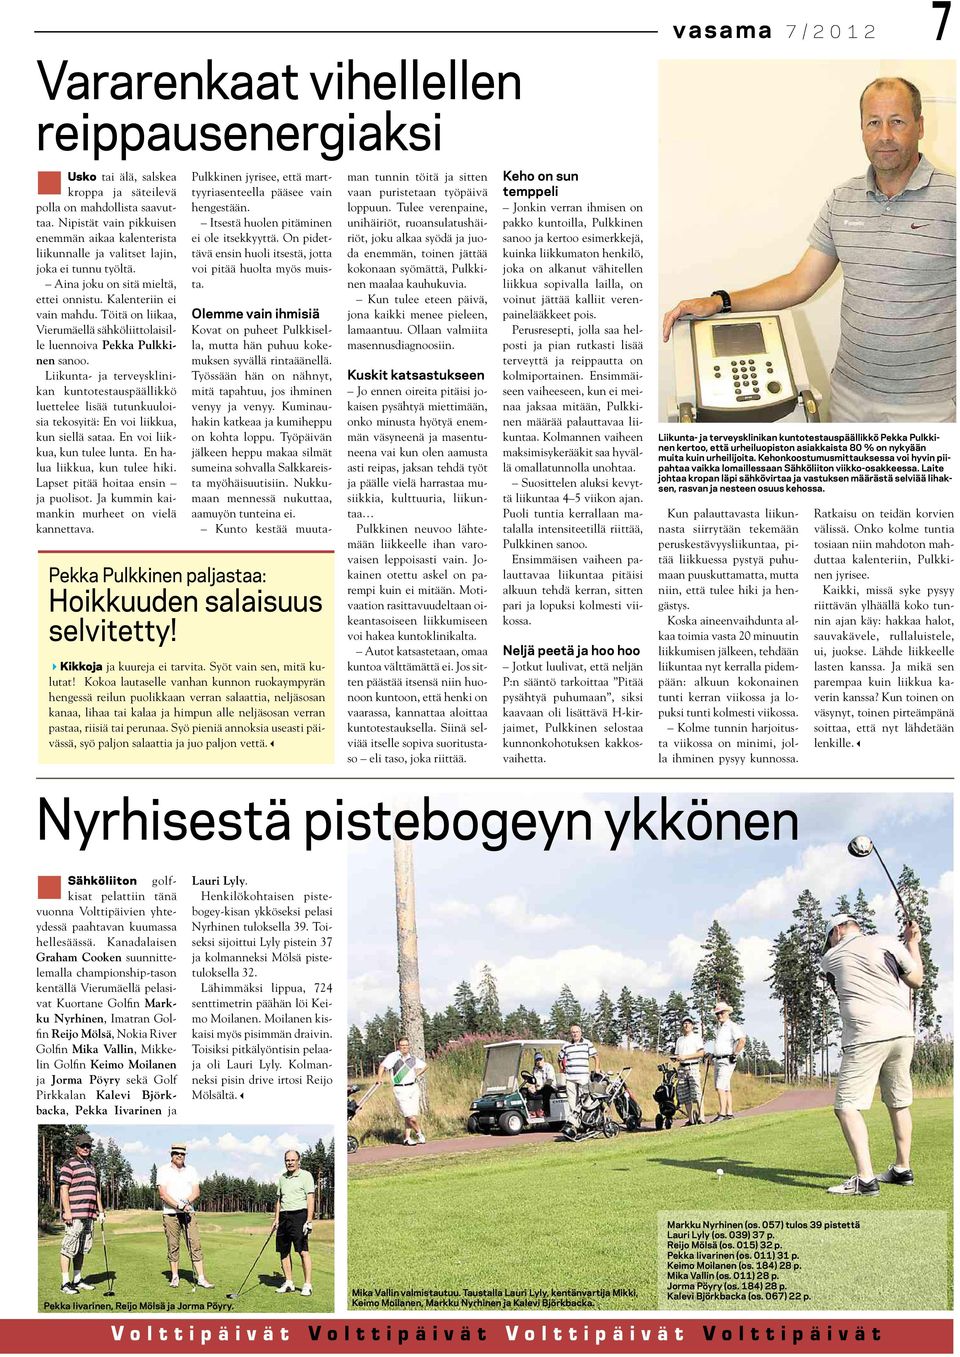 Töitä on liikaa, Vierumäellä sähköliittolaisille luennoiva Pekka Pulkkinen sanoo.